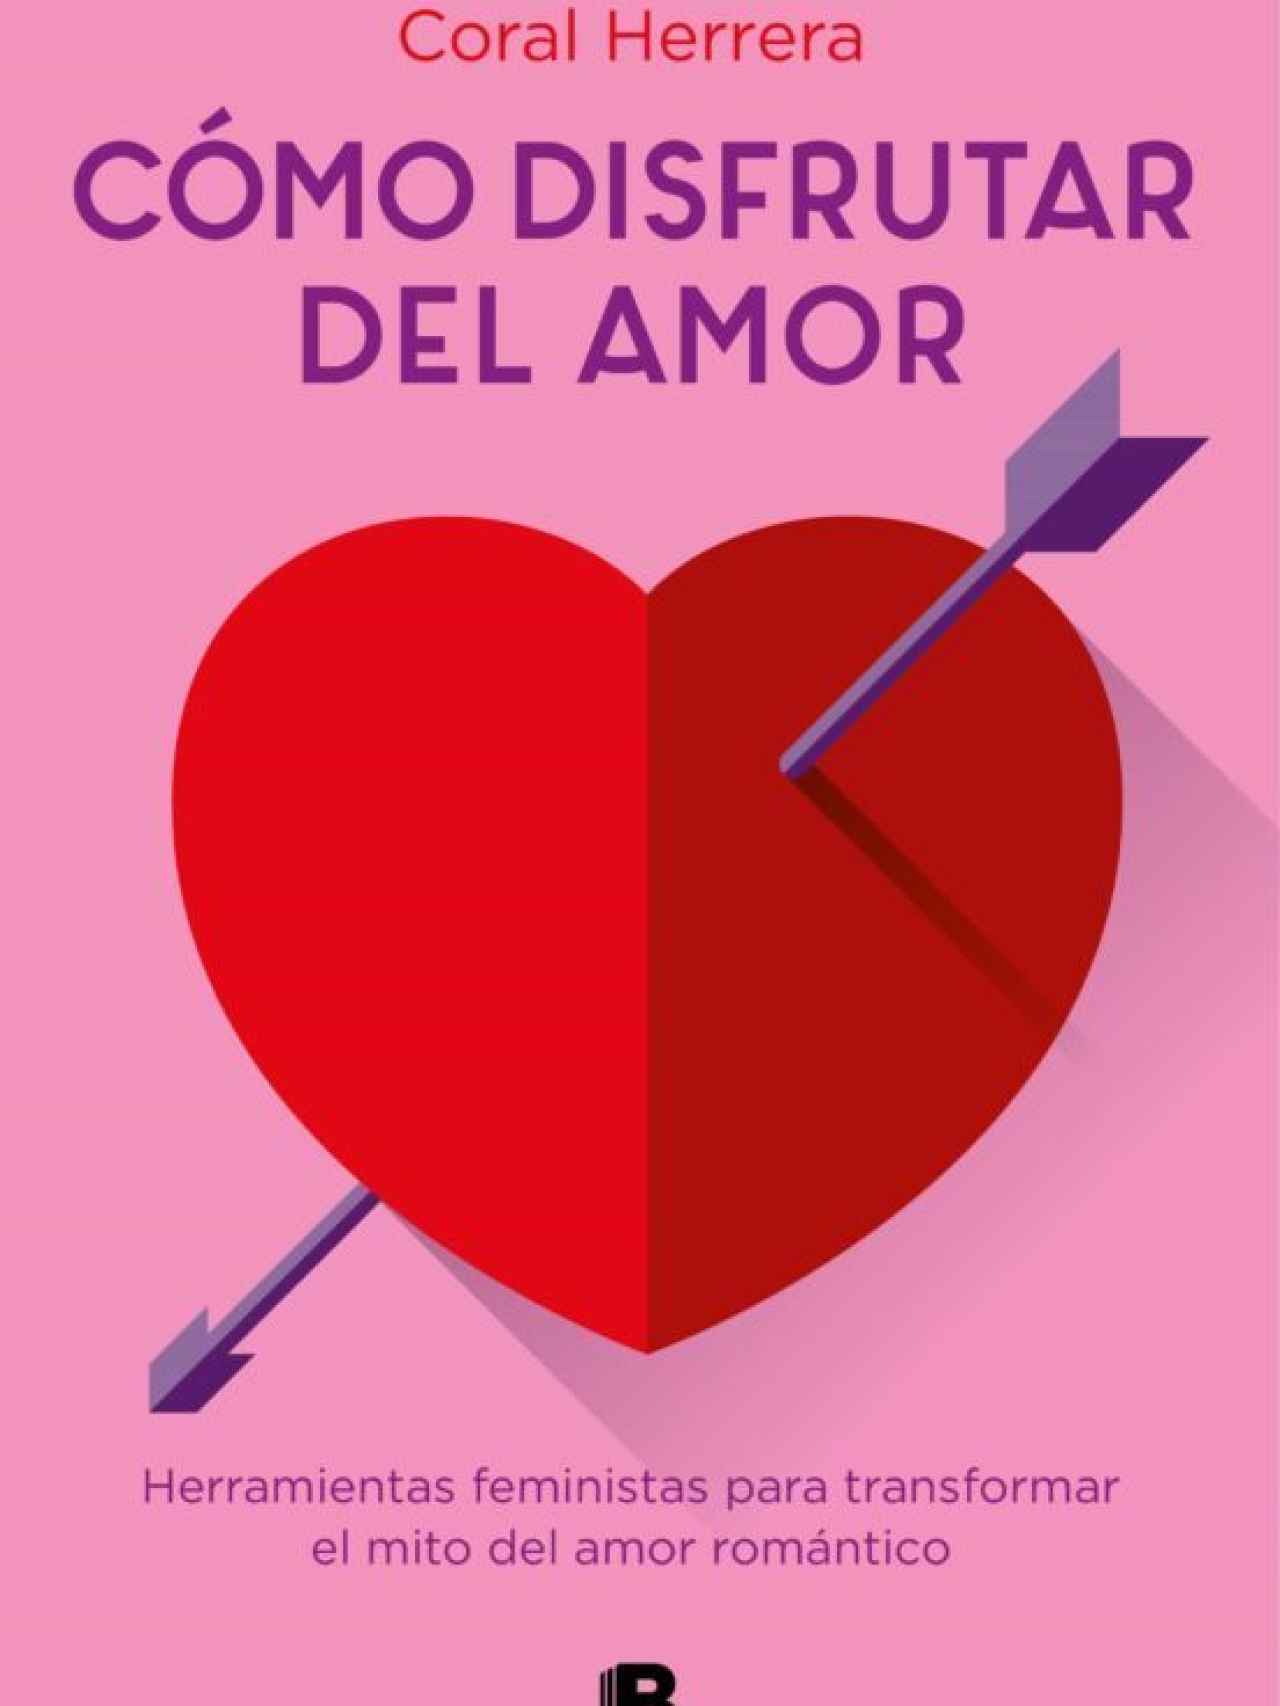 Portada del libro 'Cómo disfrutar del amor', de Coral Herrera.